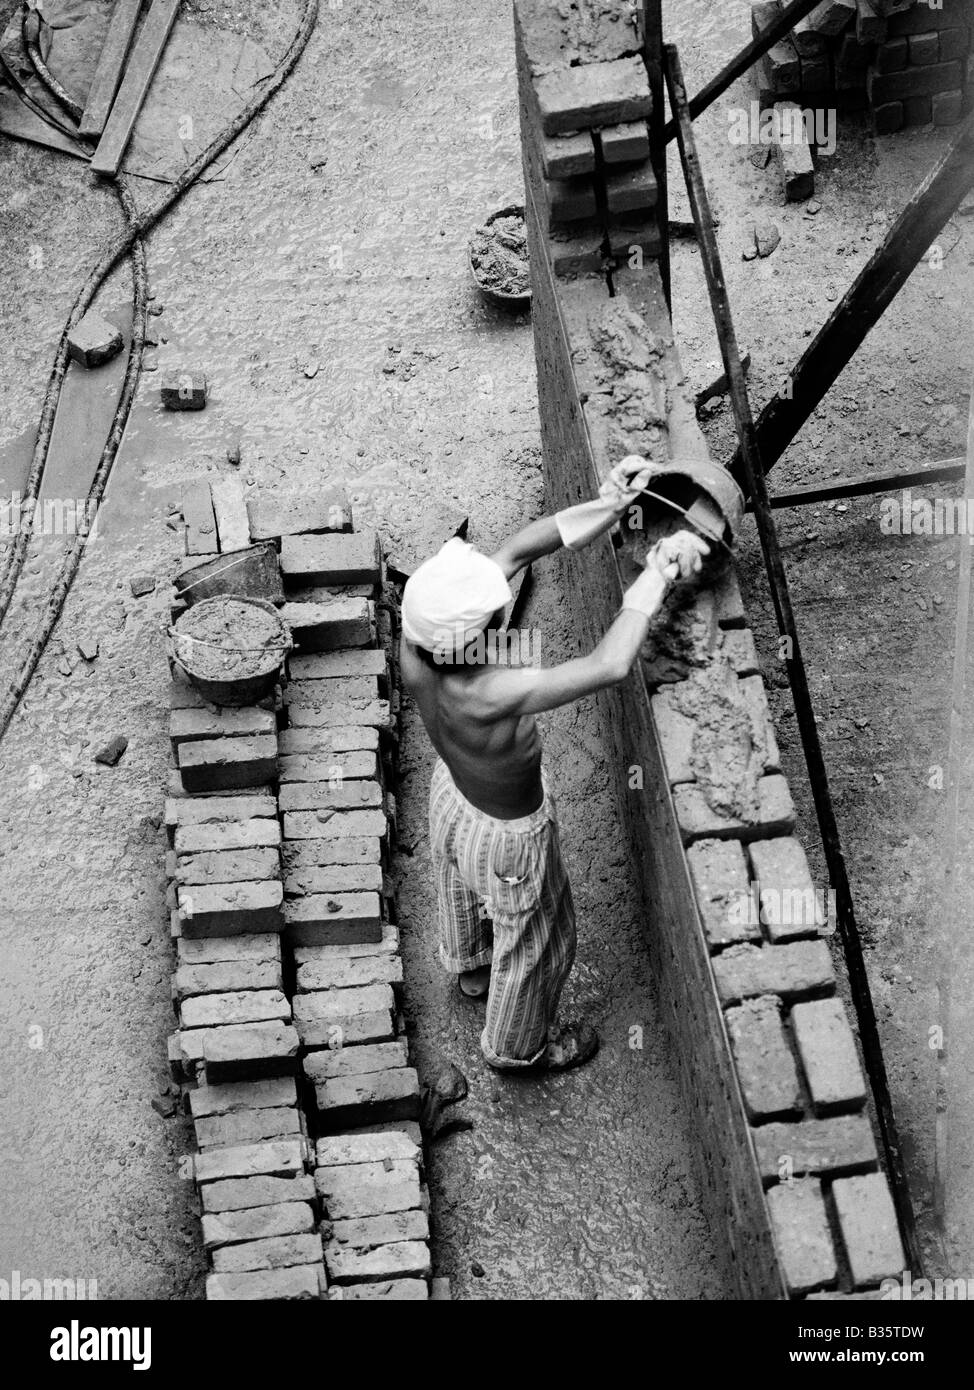 Chinese bricklayer at work Hong Kong 1979 Stock Photo